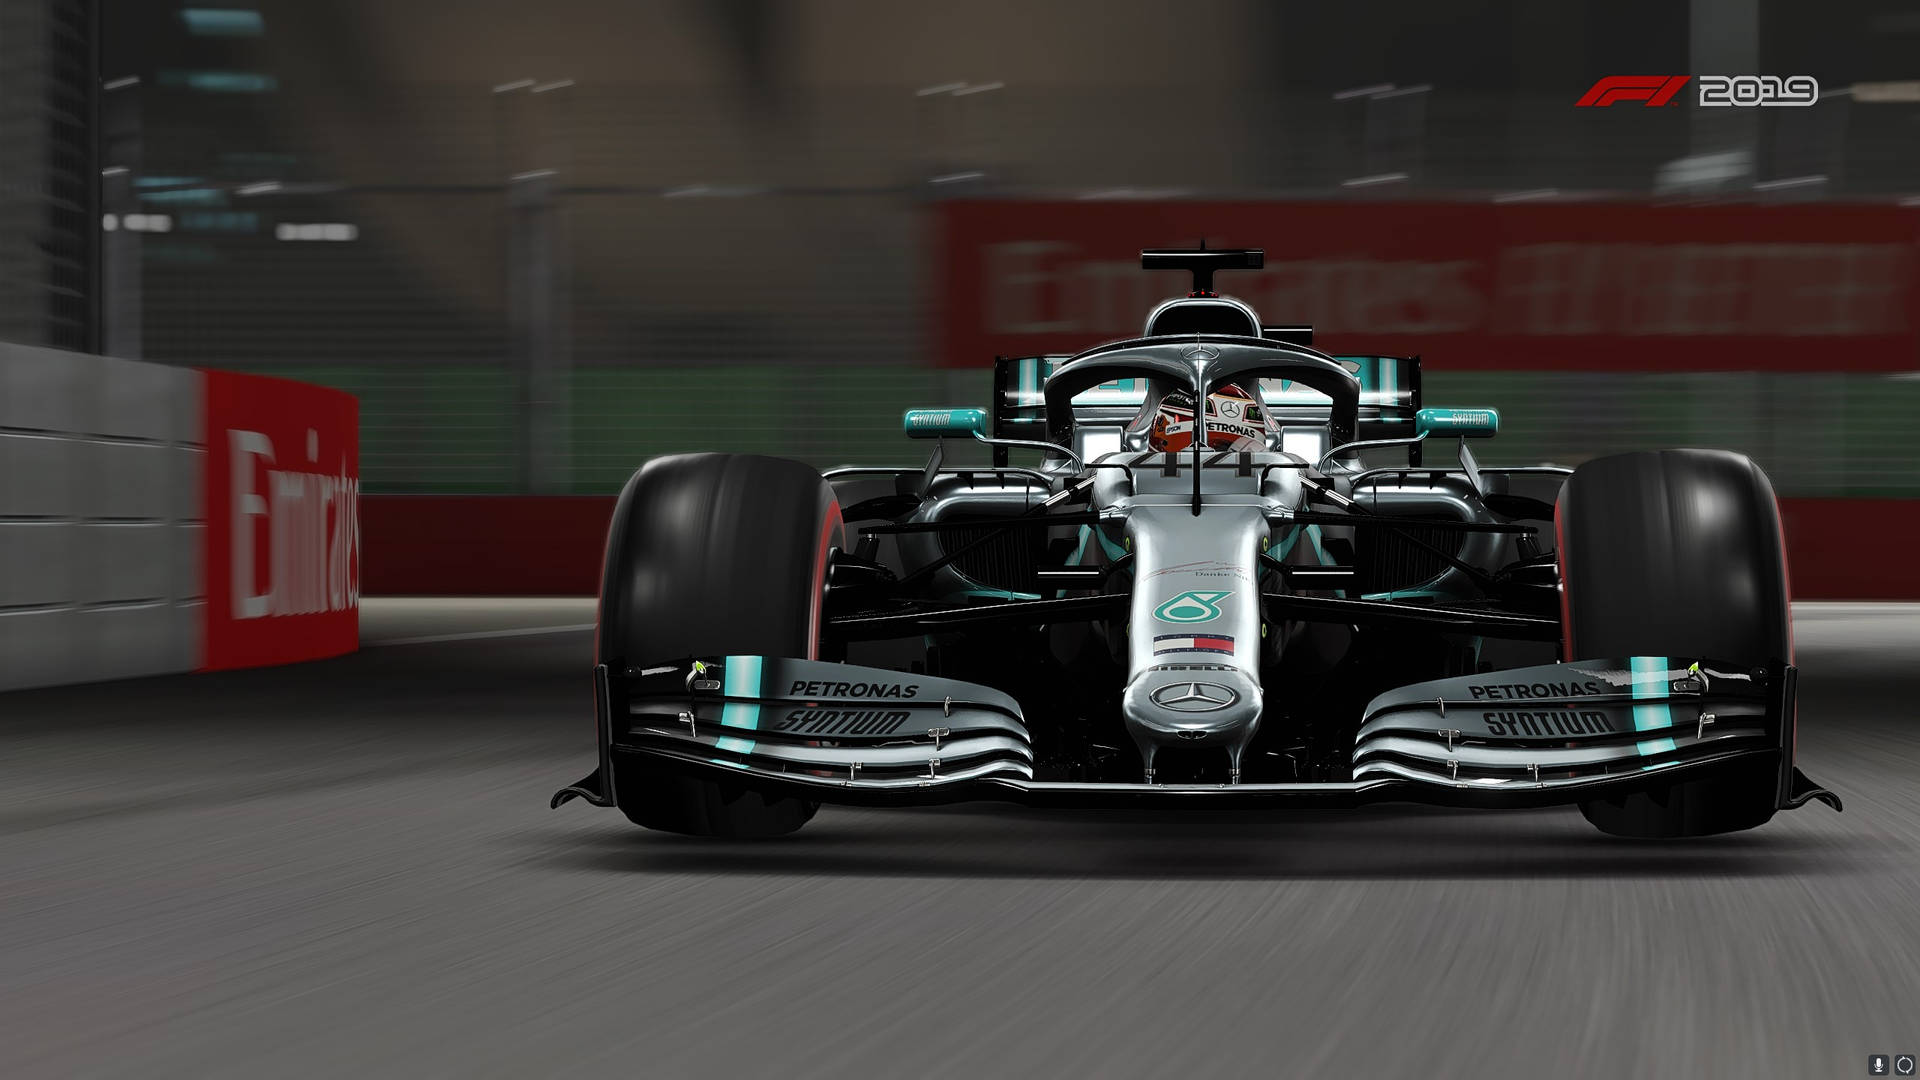 Mercedes Bil I F1 2019 Wallpaper